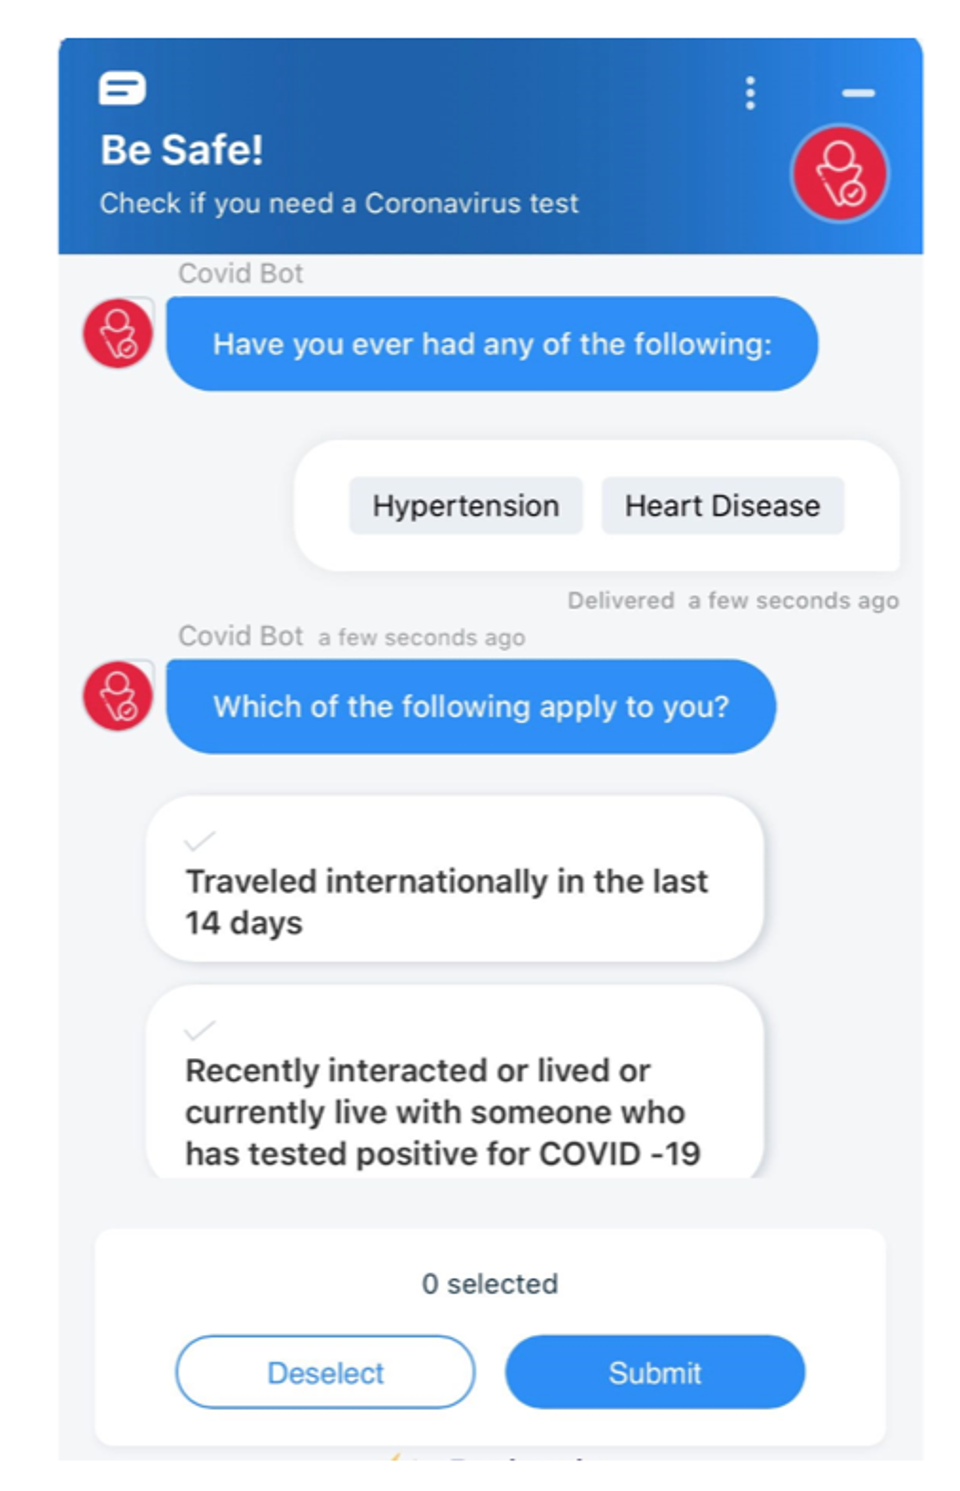 The coronavirus bot developed by Freshworks